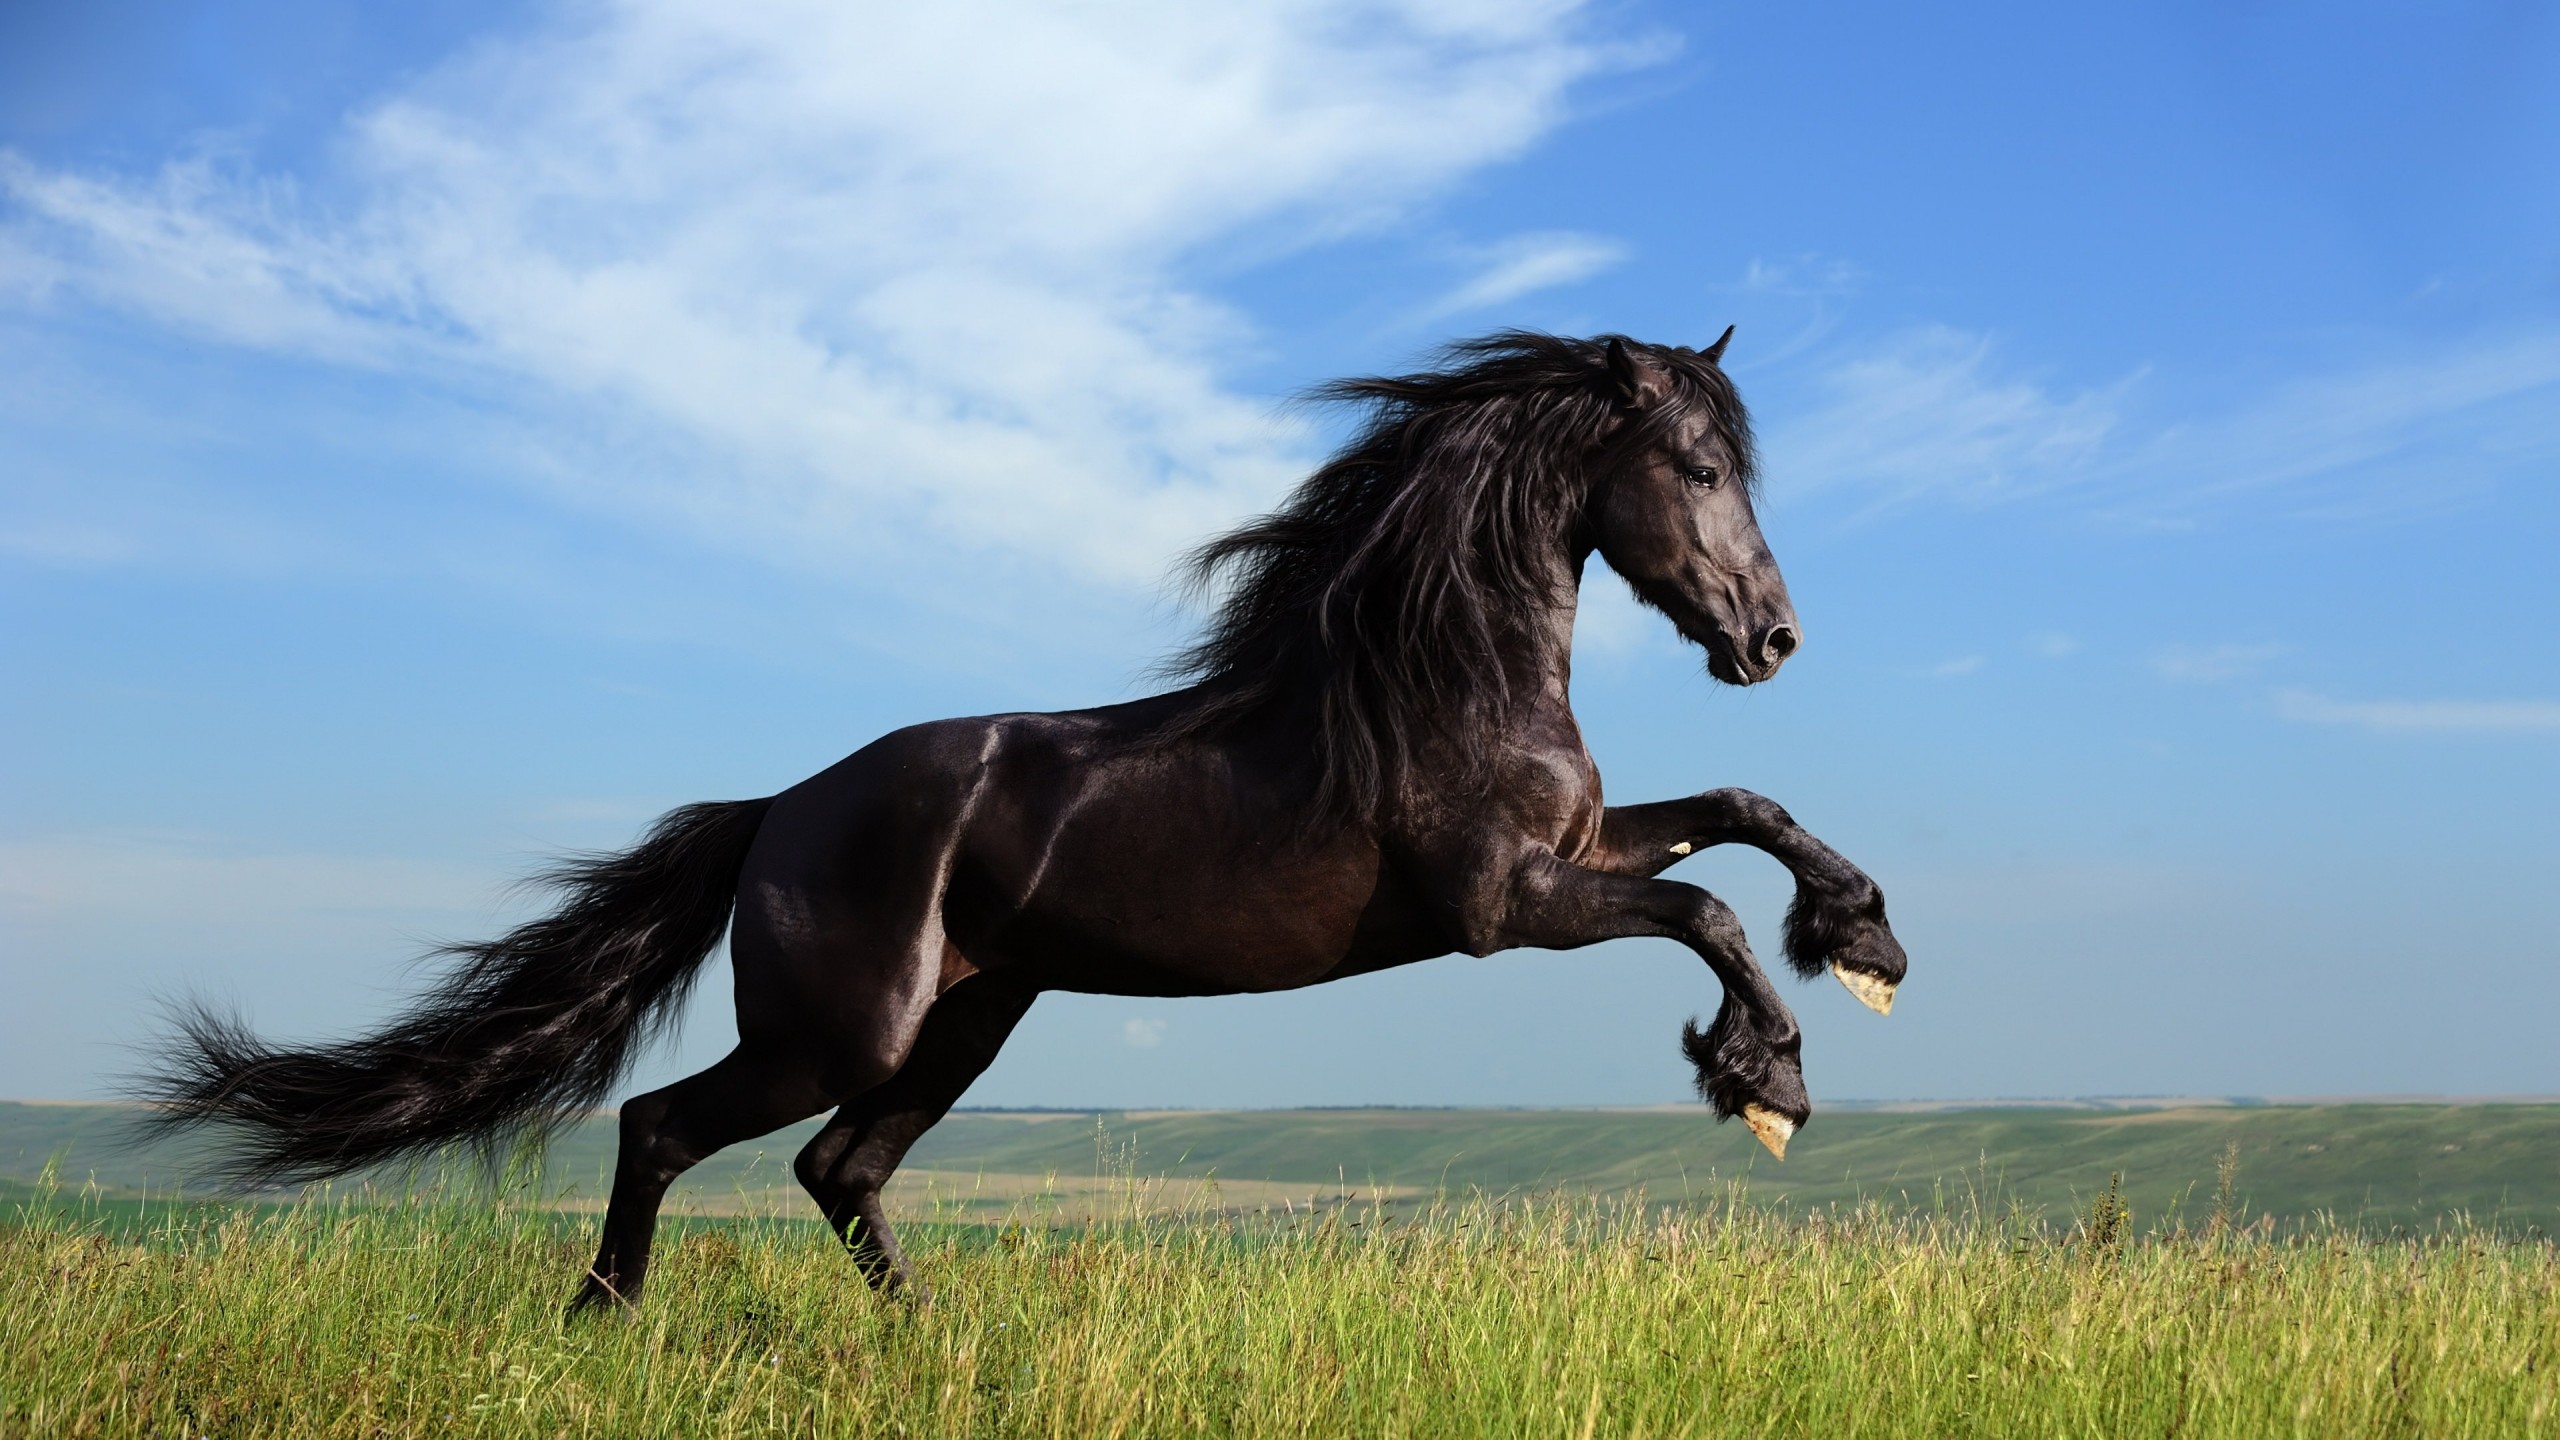 Black Horse Running Wallpaper for Desktop 2560x1440